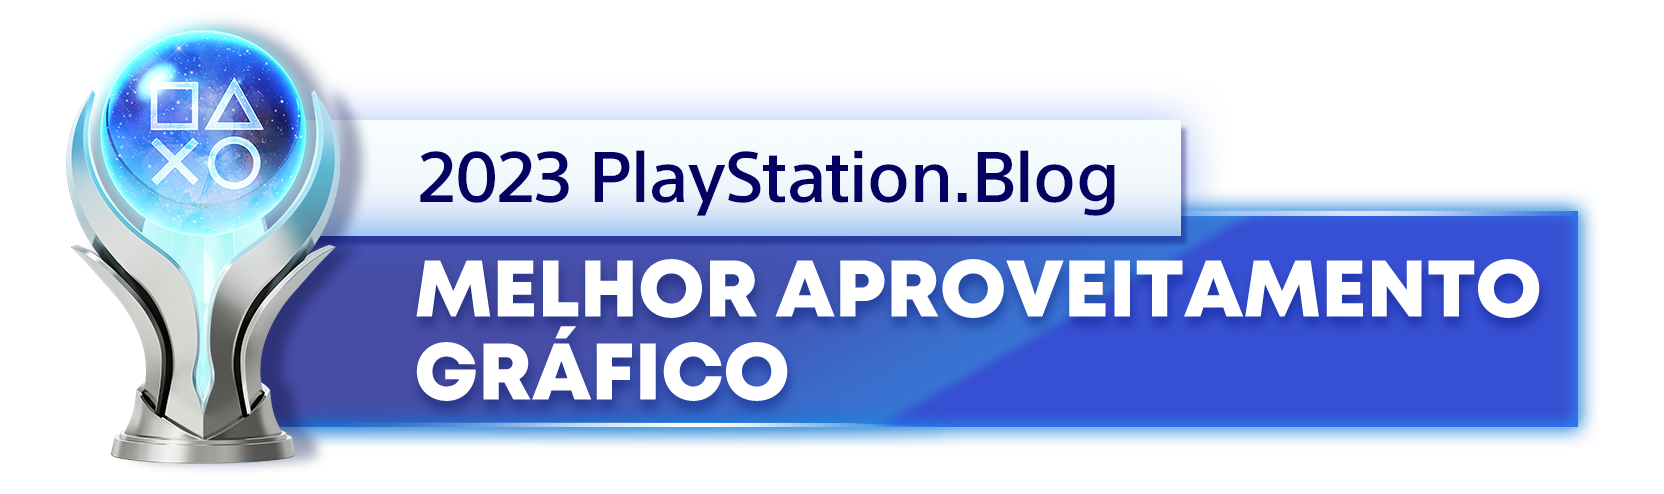  "Troféu de Platina para o vencedor da categoria Melhor Aproveitamento Gráfico de 2023 do PlayStation Blog."